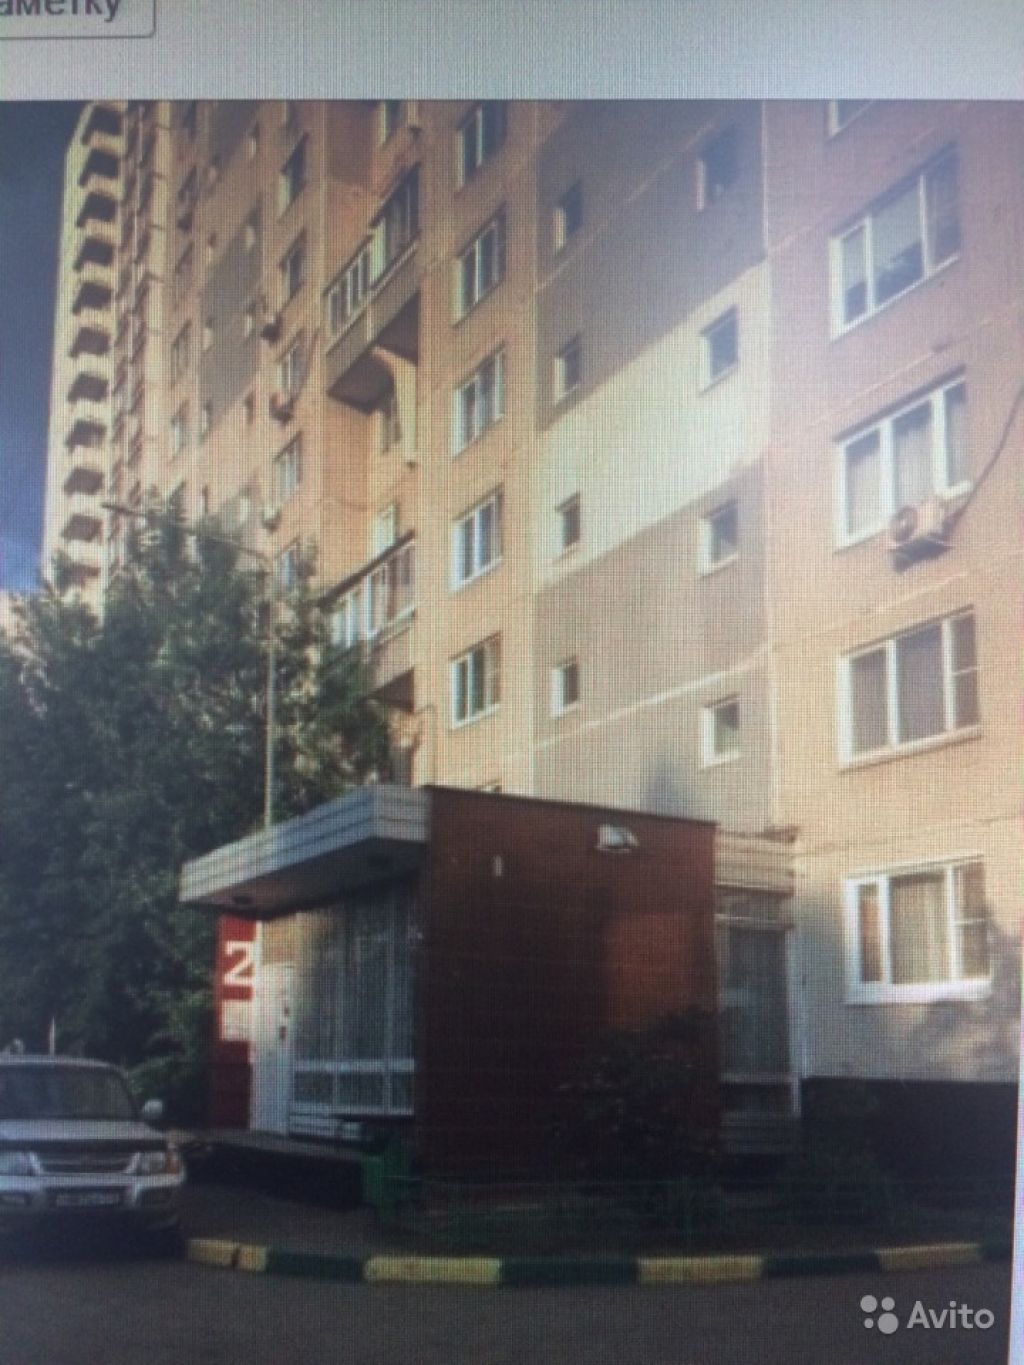 Продам квартиру 1-к квартира 40.7 м² на 9 этаже 16-этажного монолитного дома в Москве. Фото 1